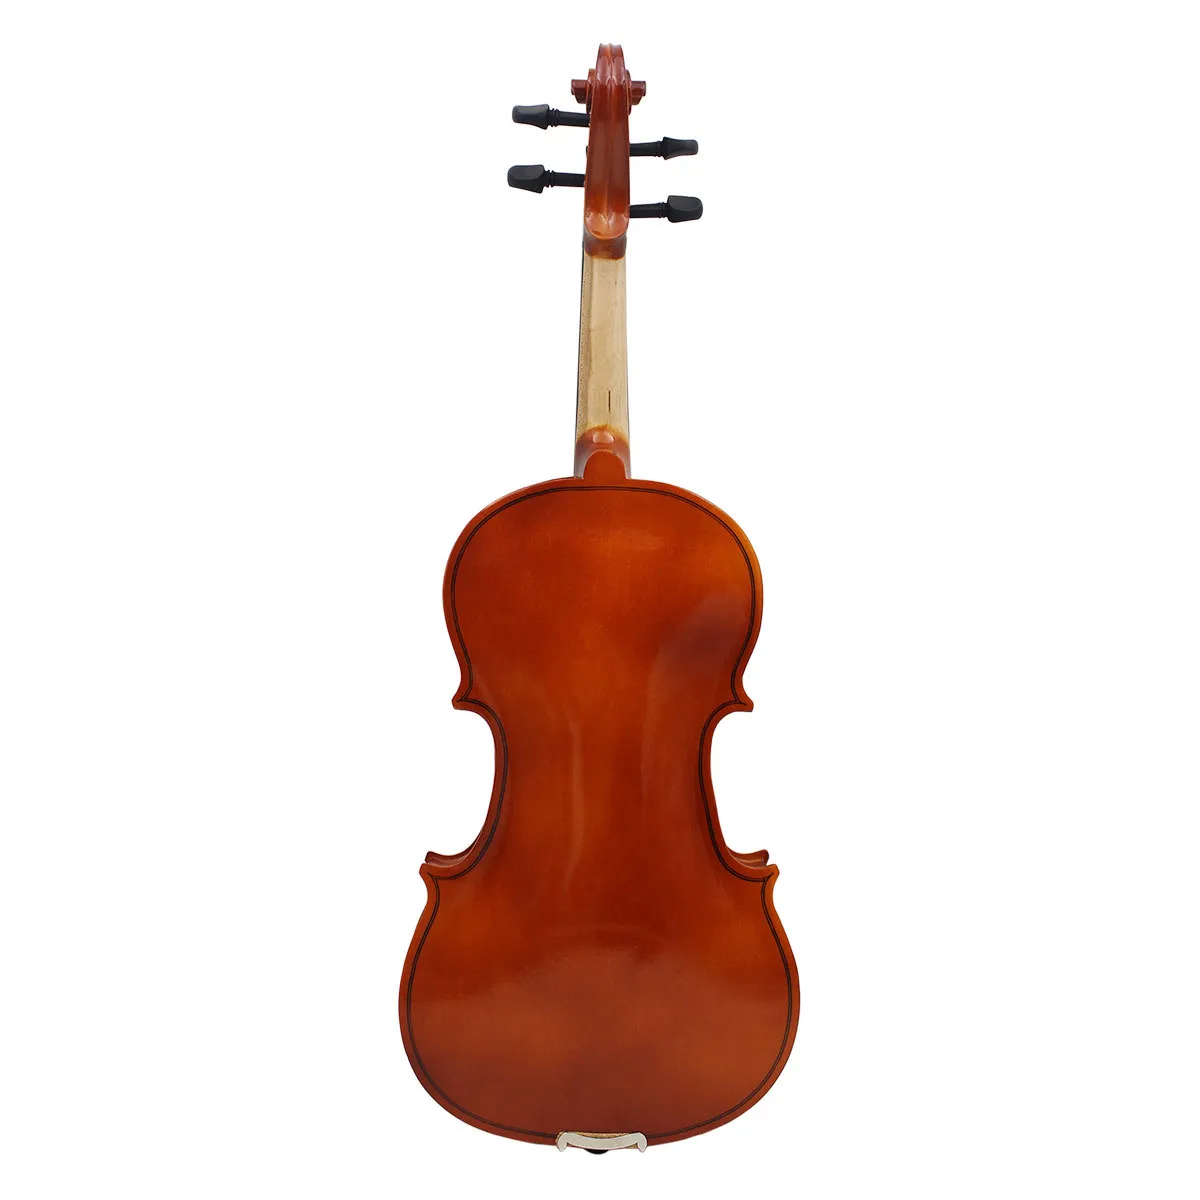 Violon populaire haut de gamme, couleur naturelle, pour débutants, étudiant en pratique, violon en tilleul, instrument de musique AV-105